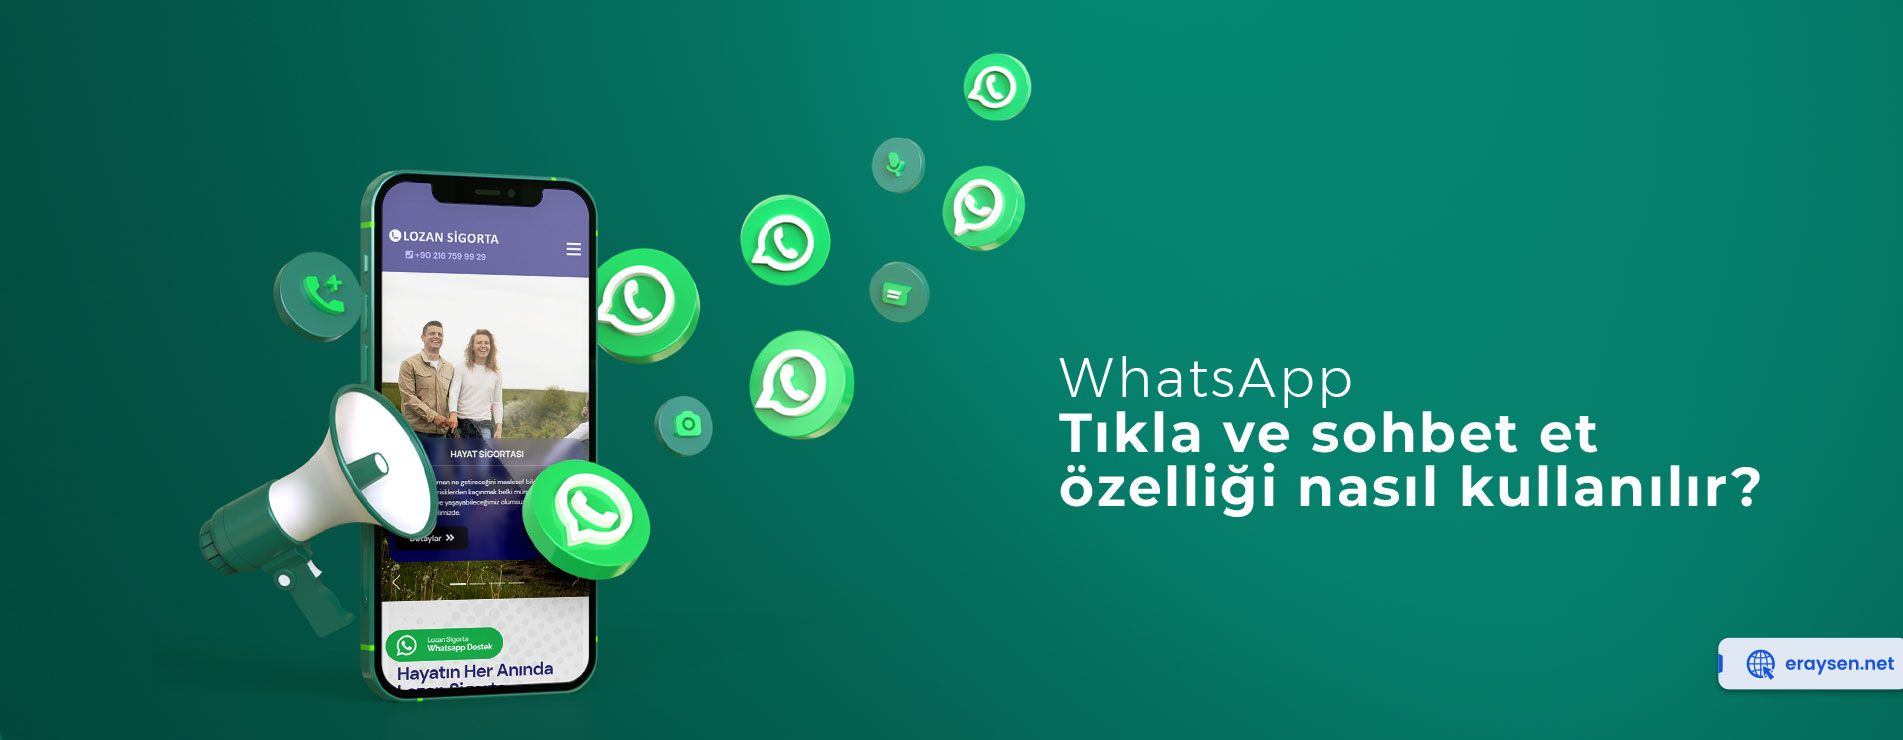 WhatsApp’ın tıkla ve sohbet et özelliği nasıl kullanılır?